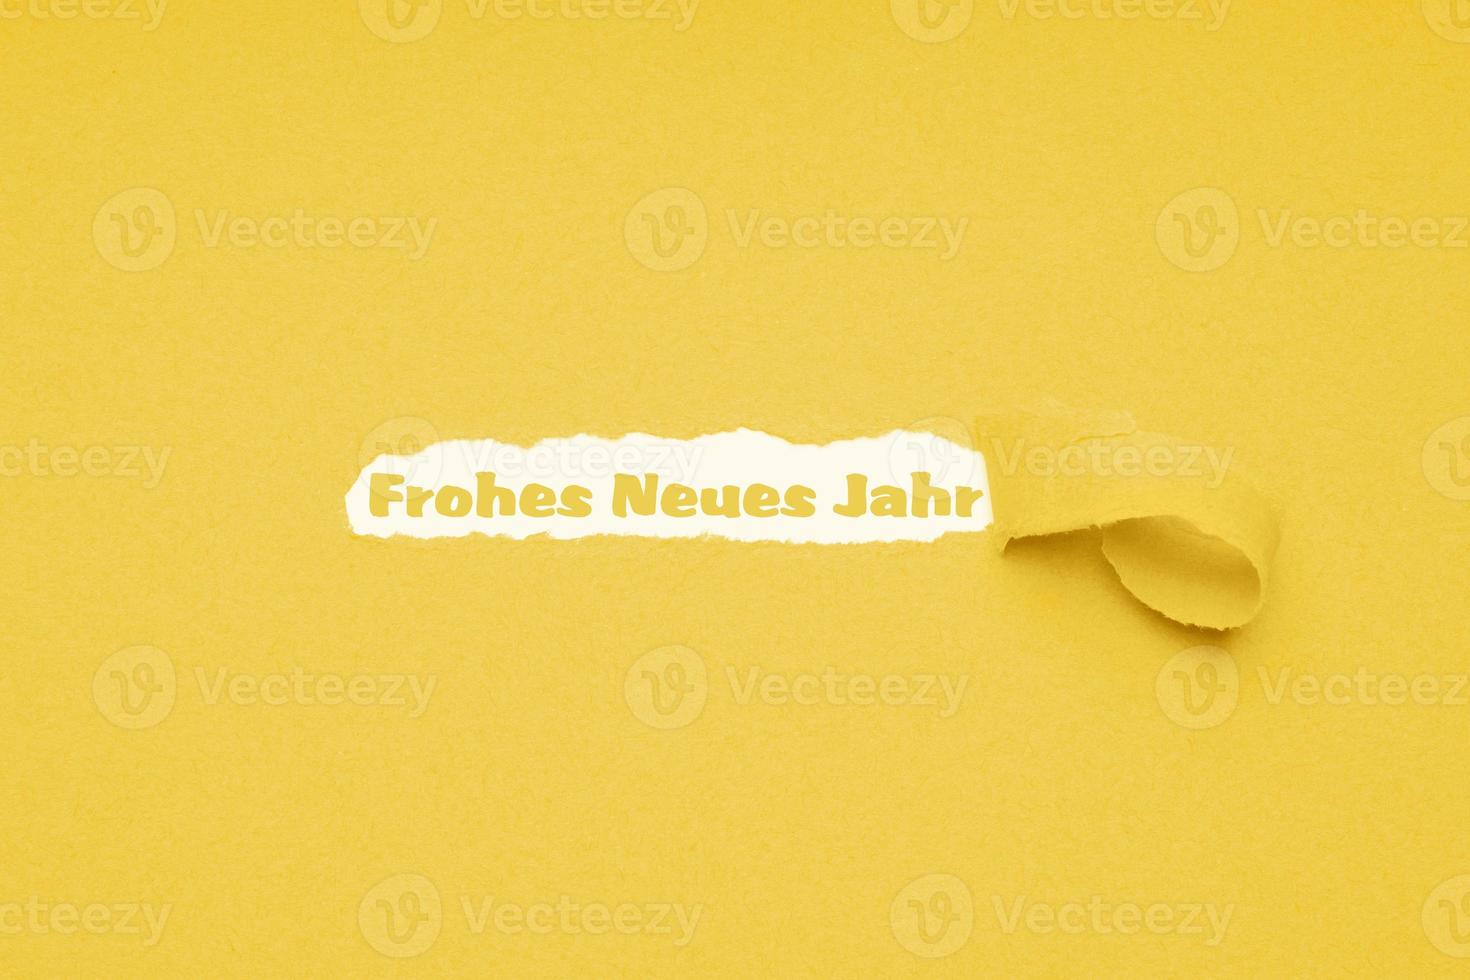 frohes neues jahr signifie bonne année en allemand photo